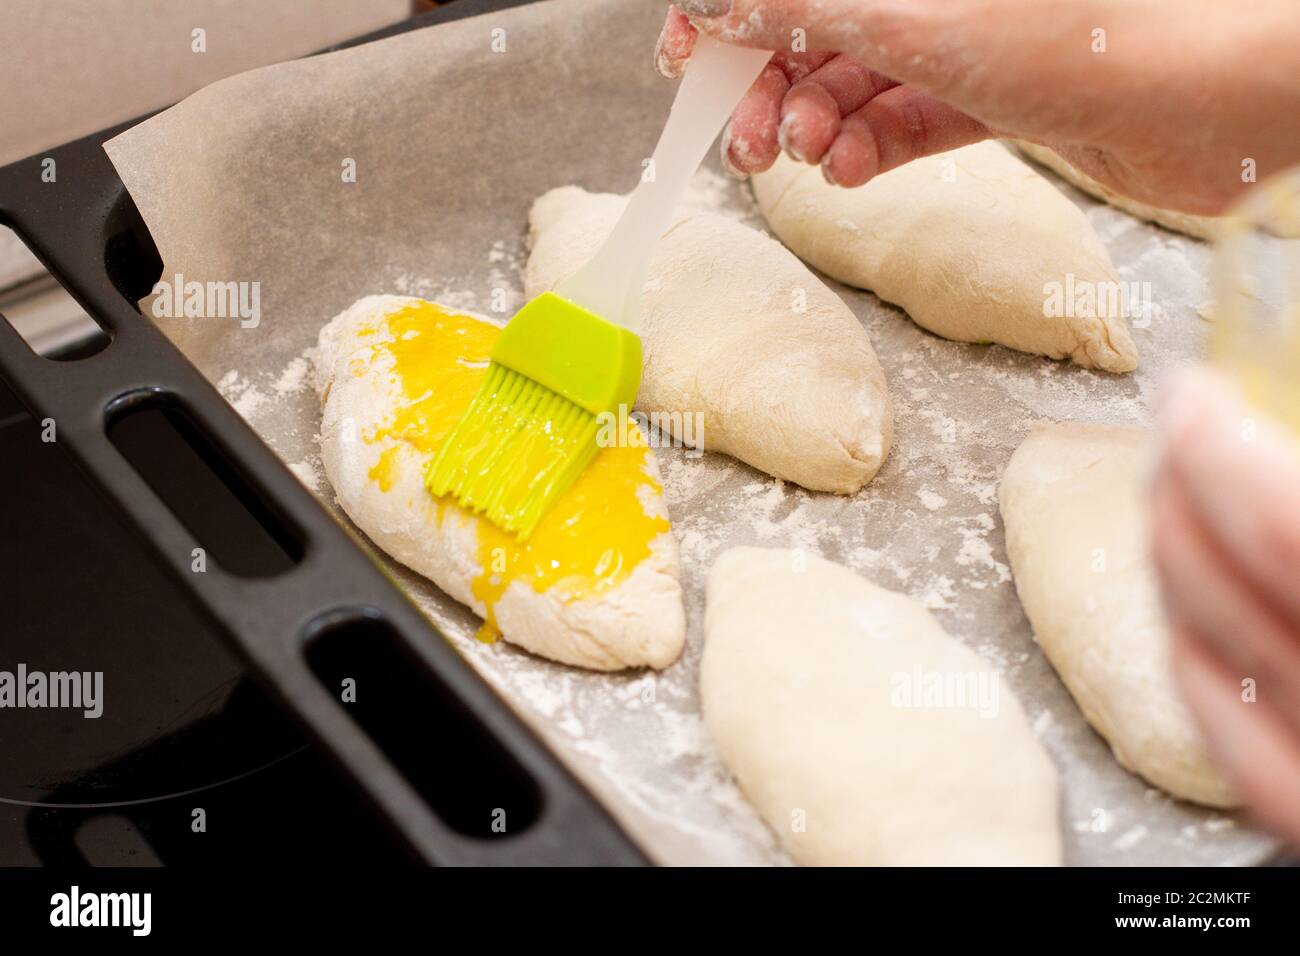 femme cuisant des tartes. jaune d'œuf graissage dans la cuisine Banque D'Images